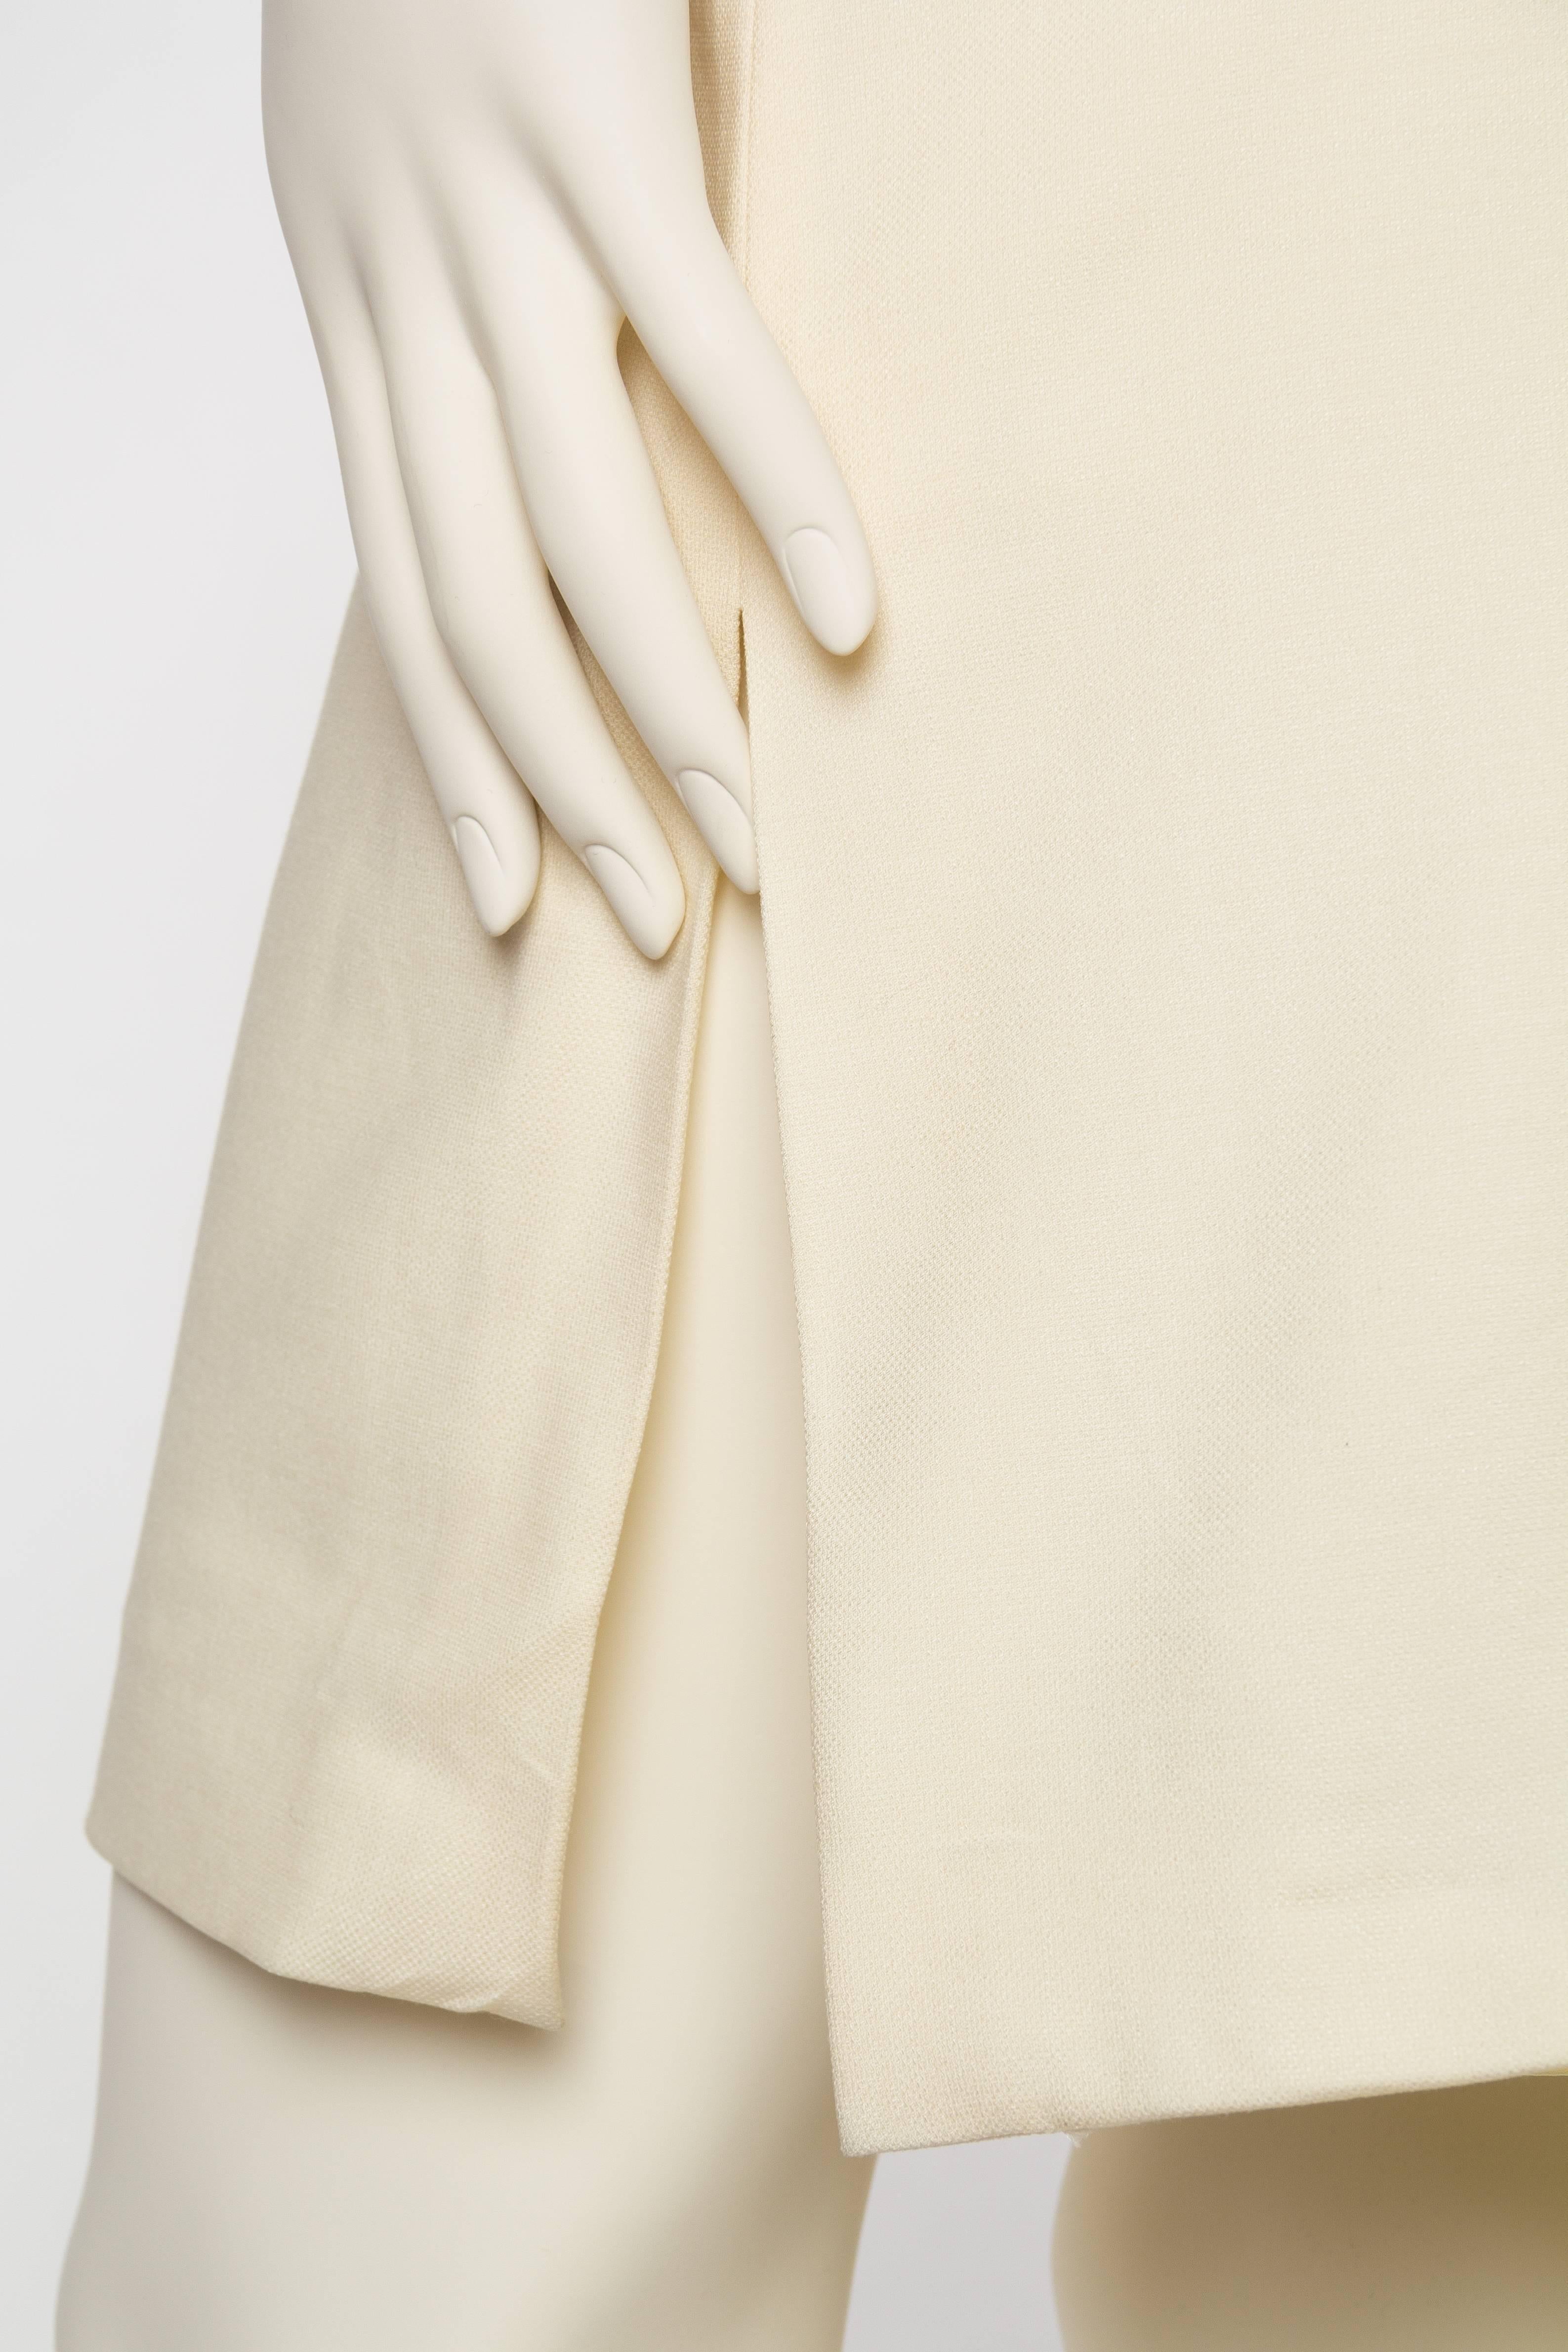 Gianni Versace Versus Stretch Cream Underwire Dress with Slit 3